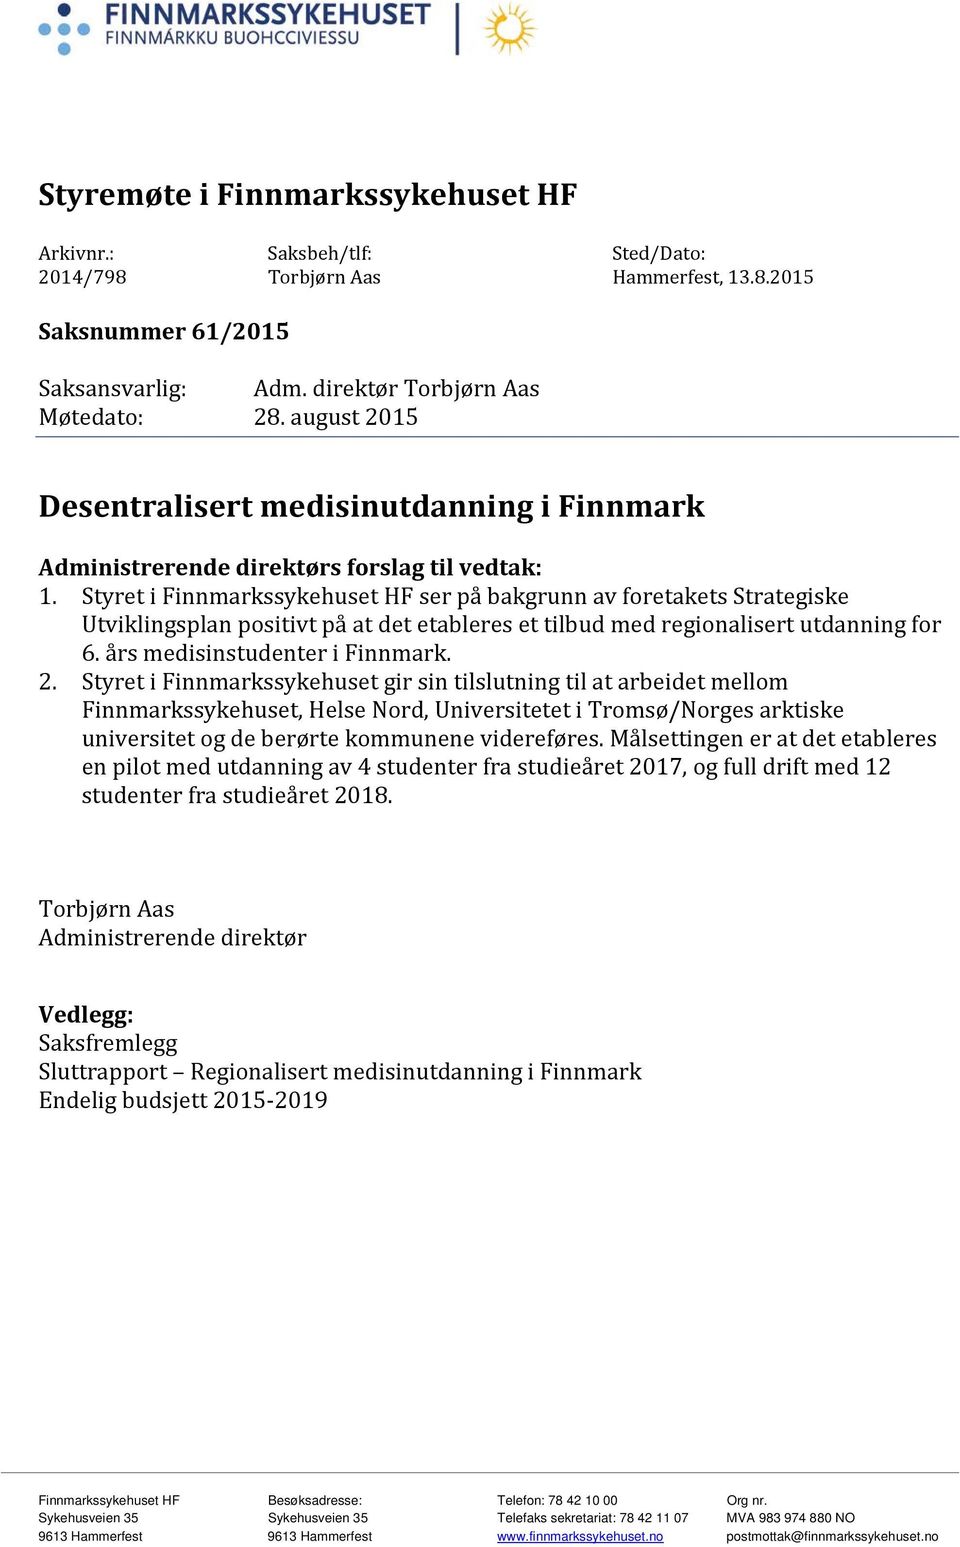 Styret i Finnmarkssykehuset HF ser på bakgrunn av foretakets Strategiske Utviklingsplan positivt på at det etableres et tilbud med regionalisert utdanning for 6. års medisinstudenter i Finnmark. 2.